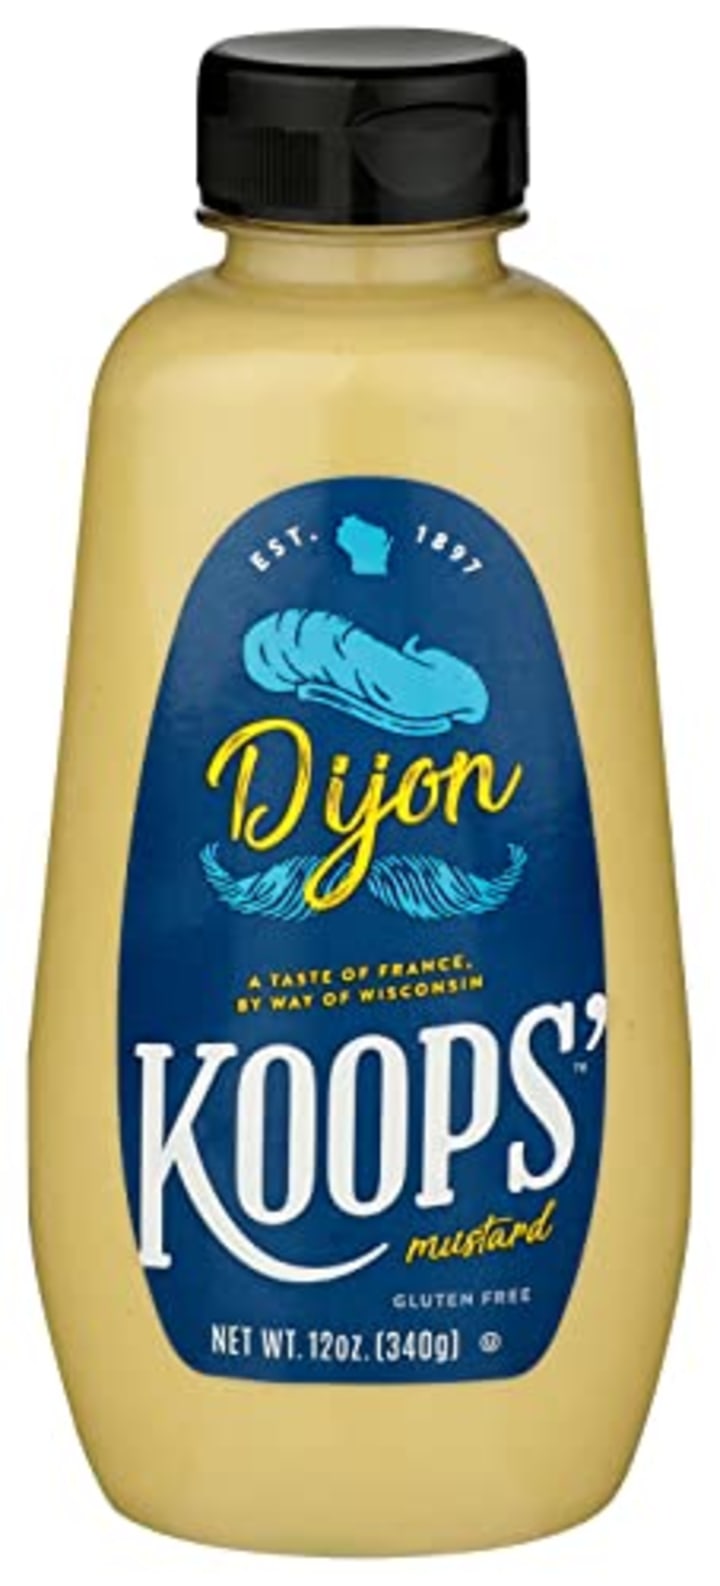 Koops' Dijon Mustard